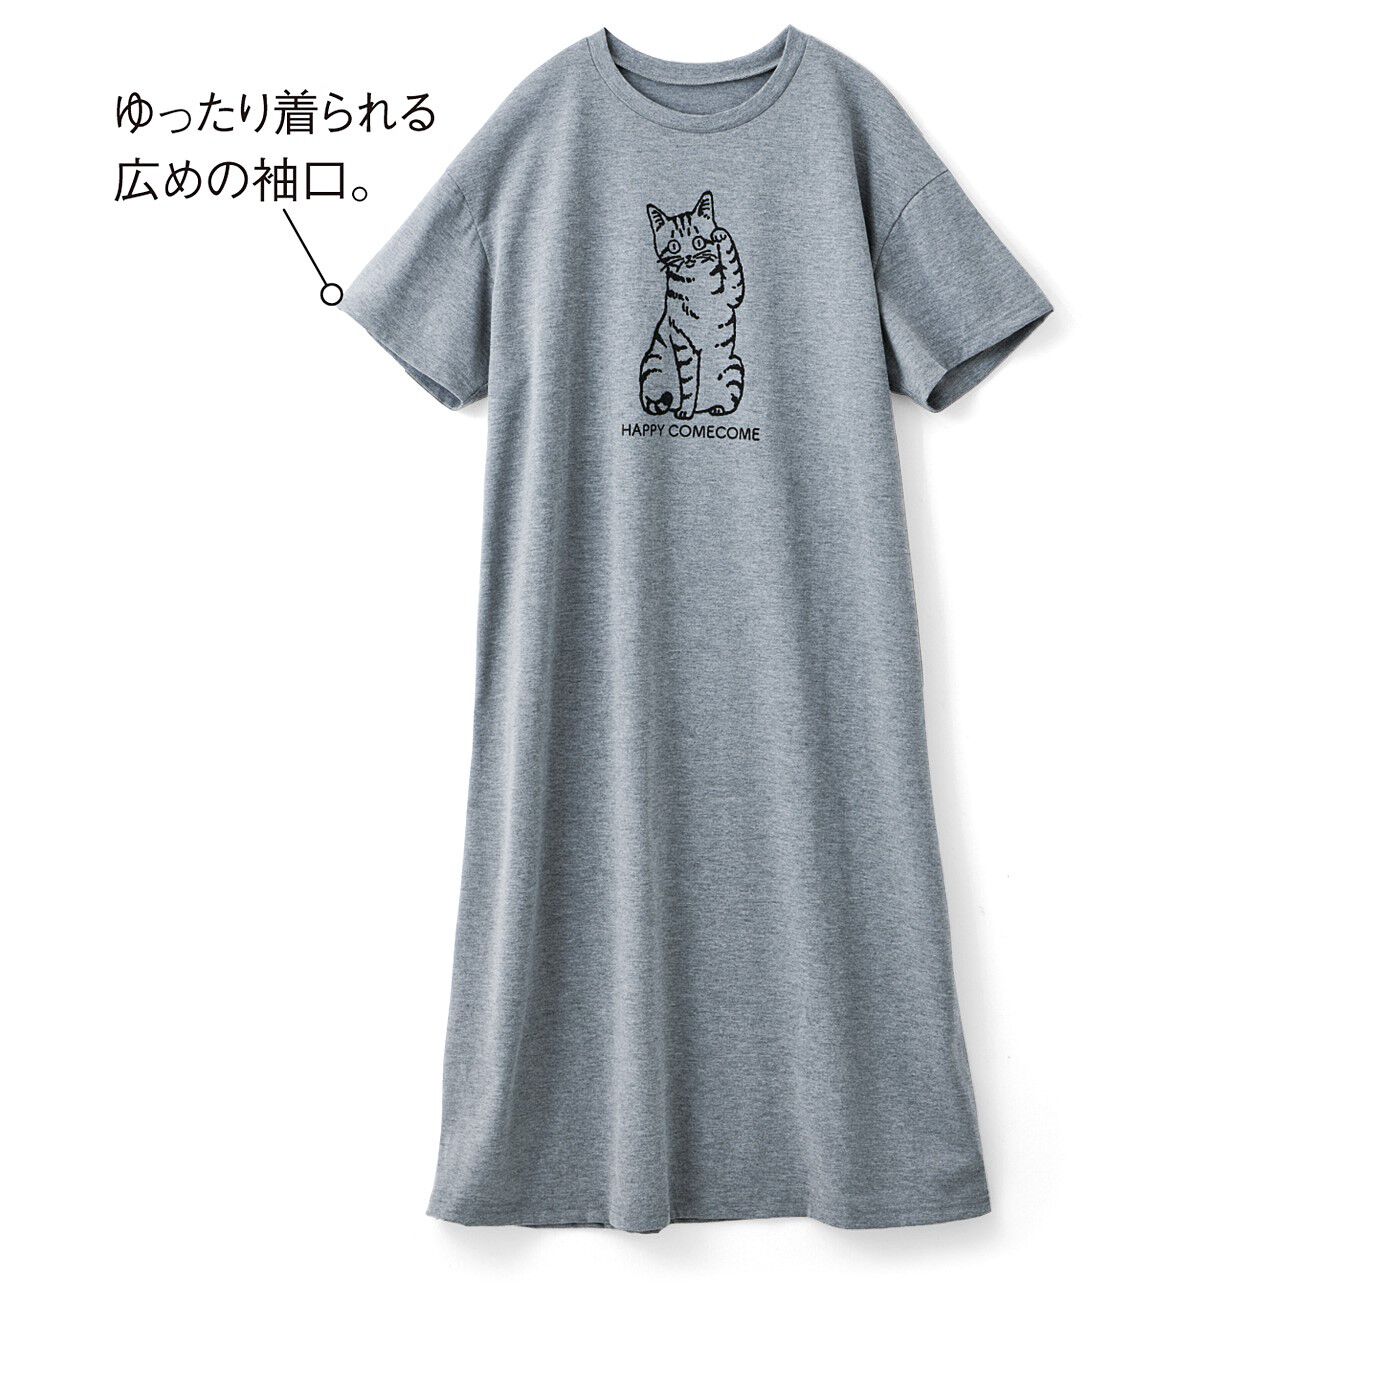 猫部|ハラミチヨさんの描くハッピー招き猫のらくちん半袖ルームワンピの会|〈グレー〉